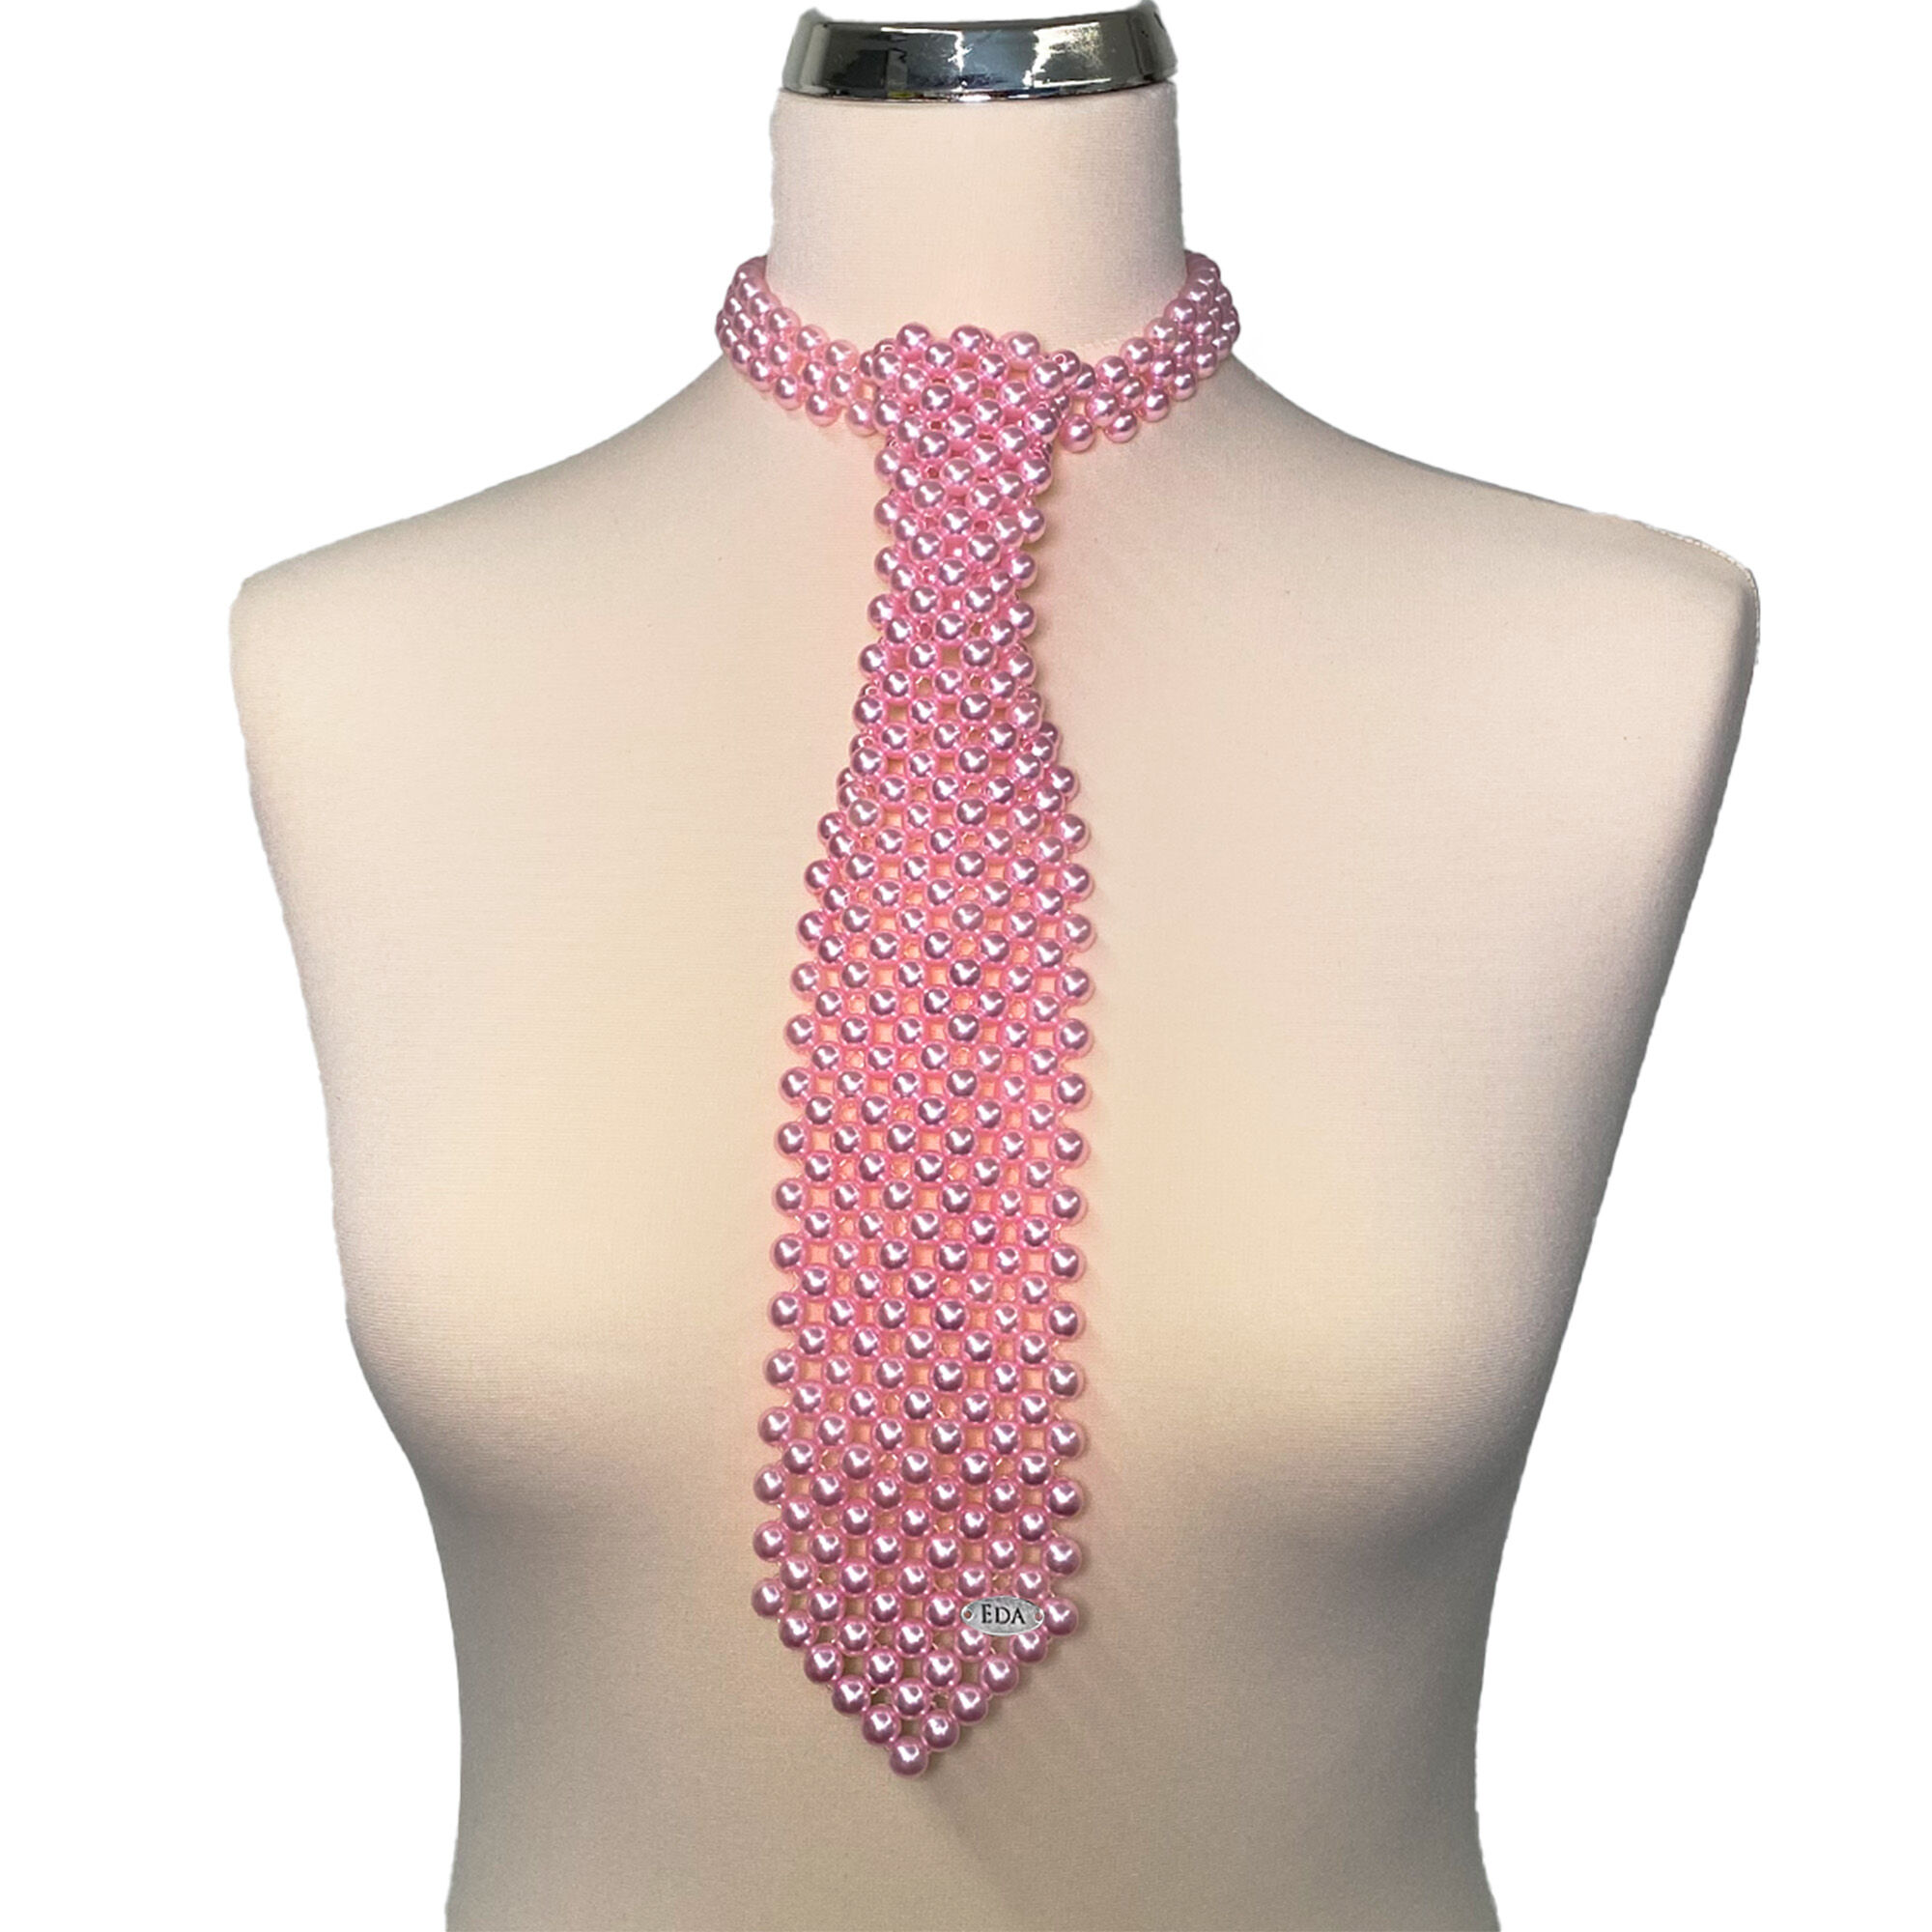 Baby Pink Tie